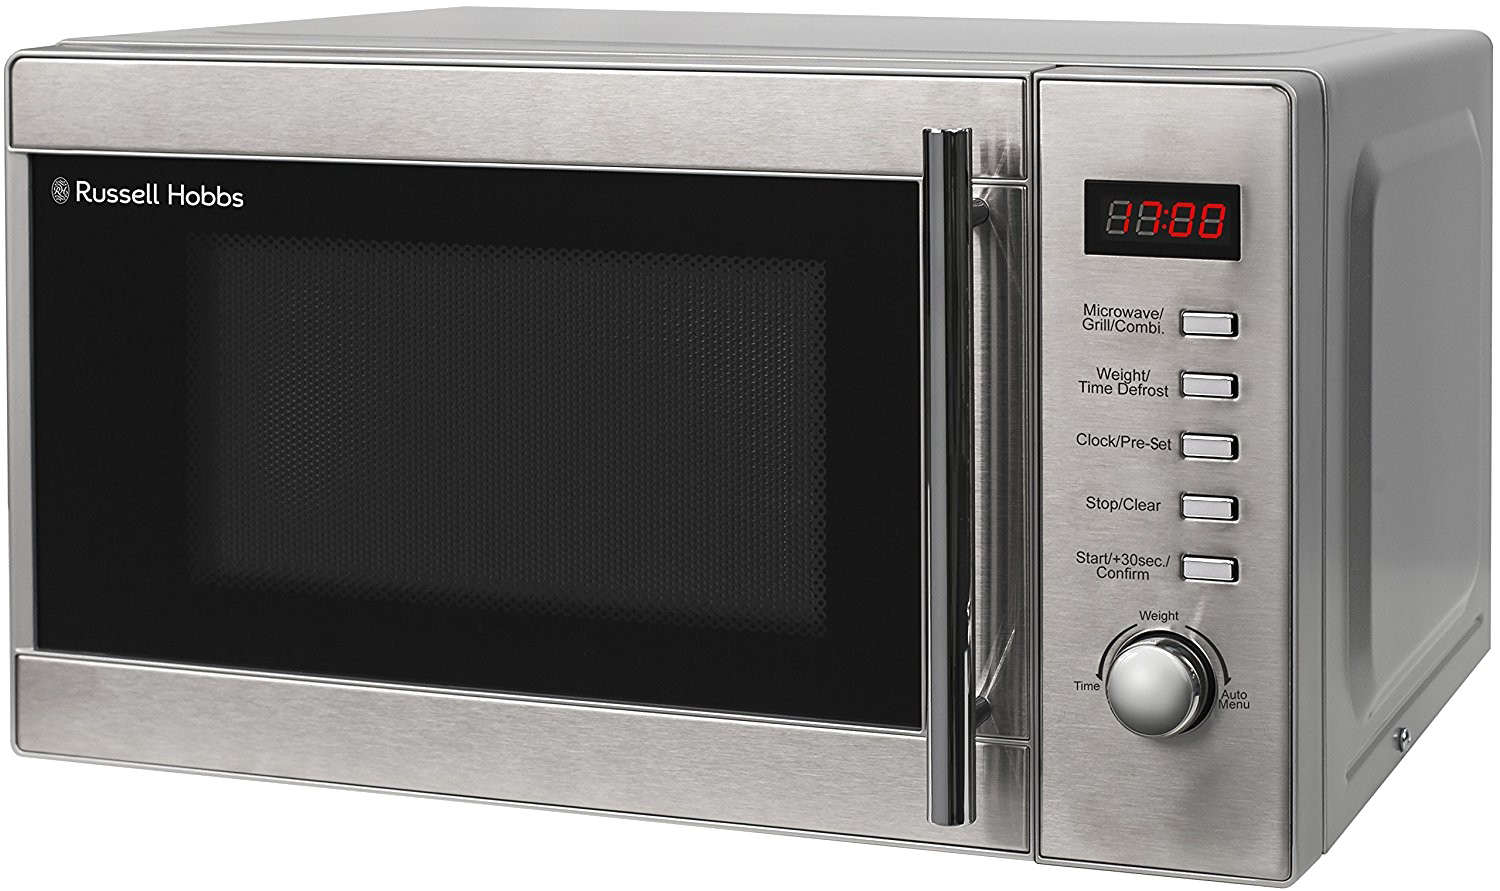 Immagine Trasparente del forno a microonde moderno